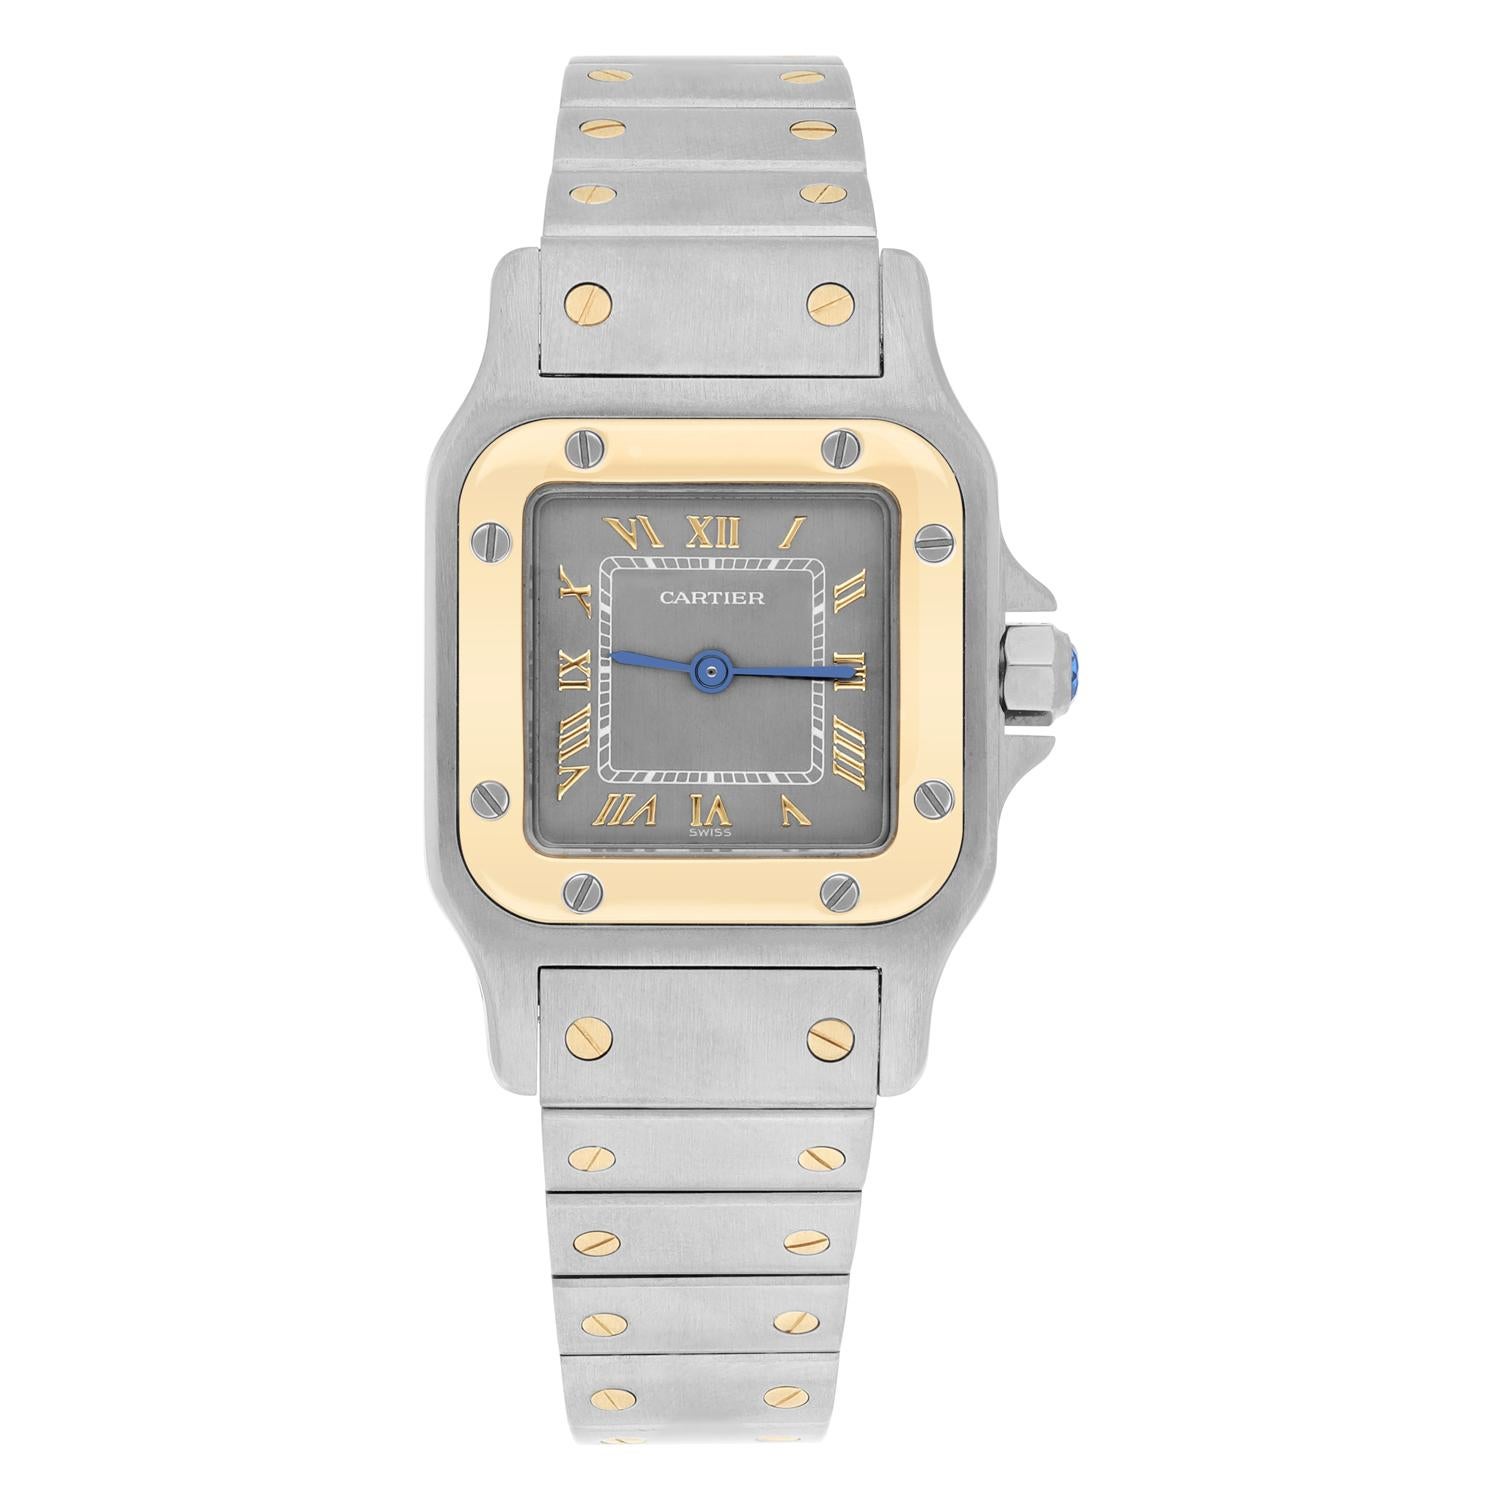 Diese atemberaubende Cartier Santos Galbee Armbanduhr verleiht ihrer Trägerin ein ebenso luxuriöses und elegantes Gefühl wie der Zeitmesser selbst. Mit seinem Gelbgold- und Edelstahlarmband und dem polierten Silbergehäuse ist dieser Vintage-Artikel